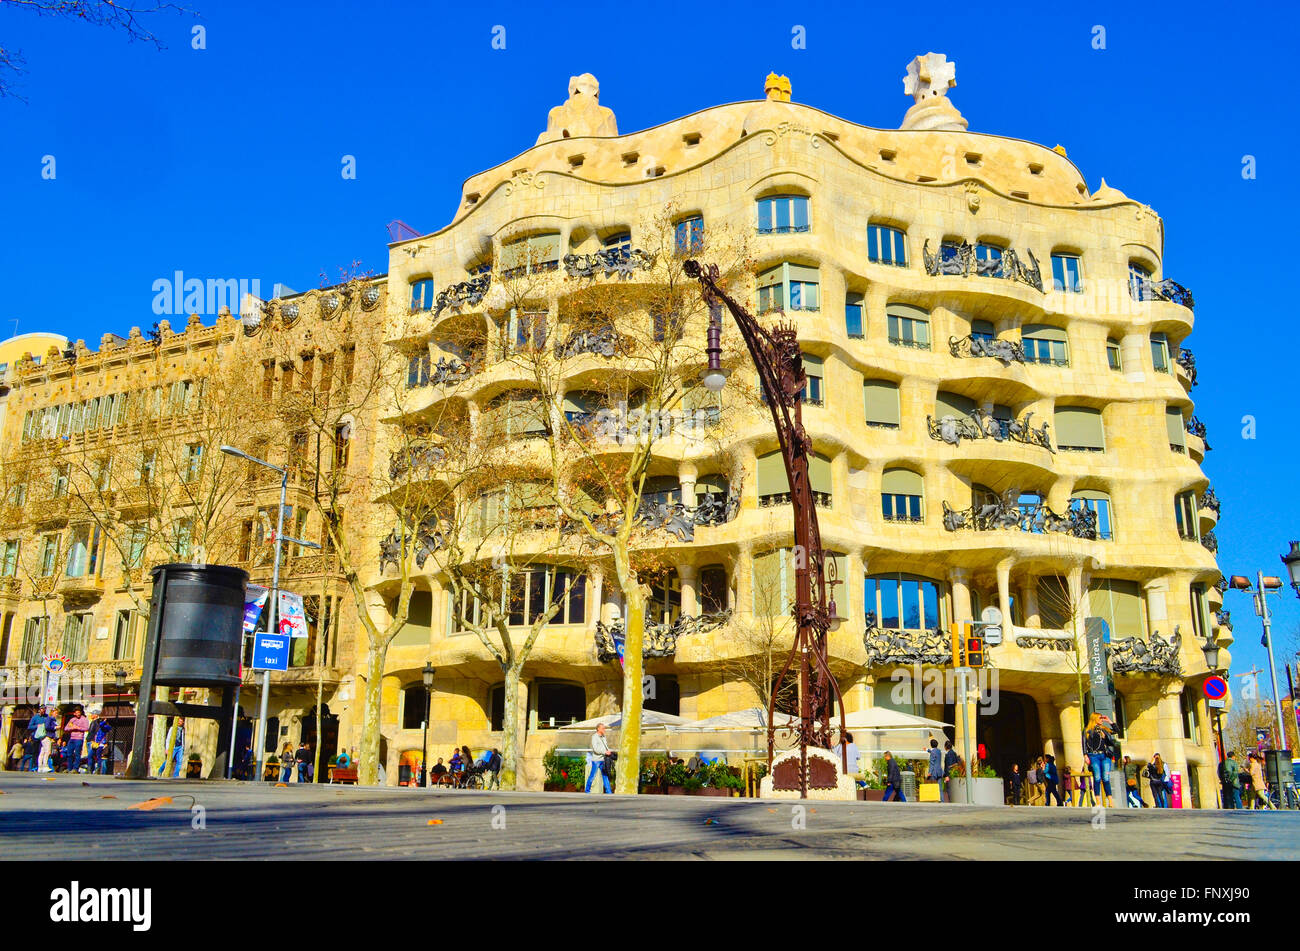 Casa Mila aka La Pedrera, diseñado por el arquitecto Antoni Gaudí. Barcelona, Cataluña, España. Foto de stock